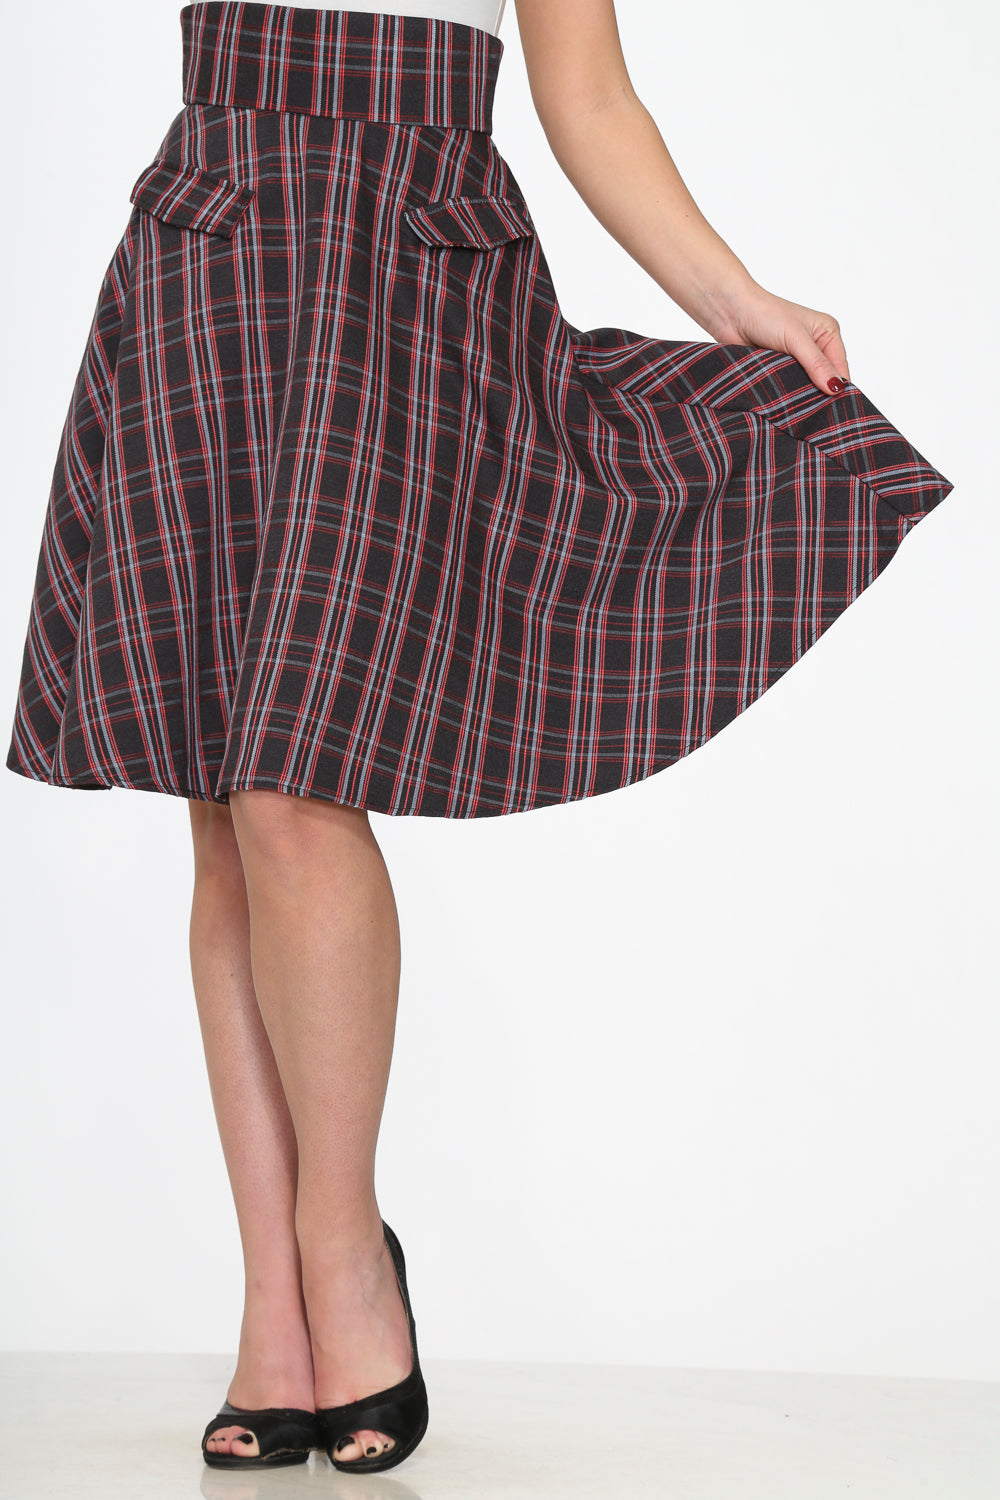 49290 Black Red Plaid Skirt